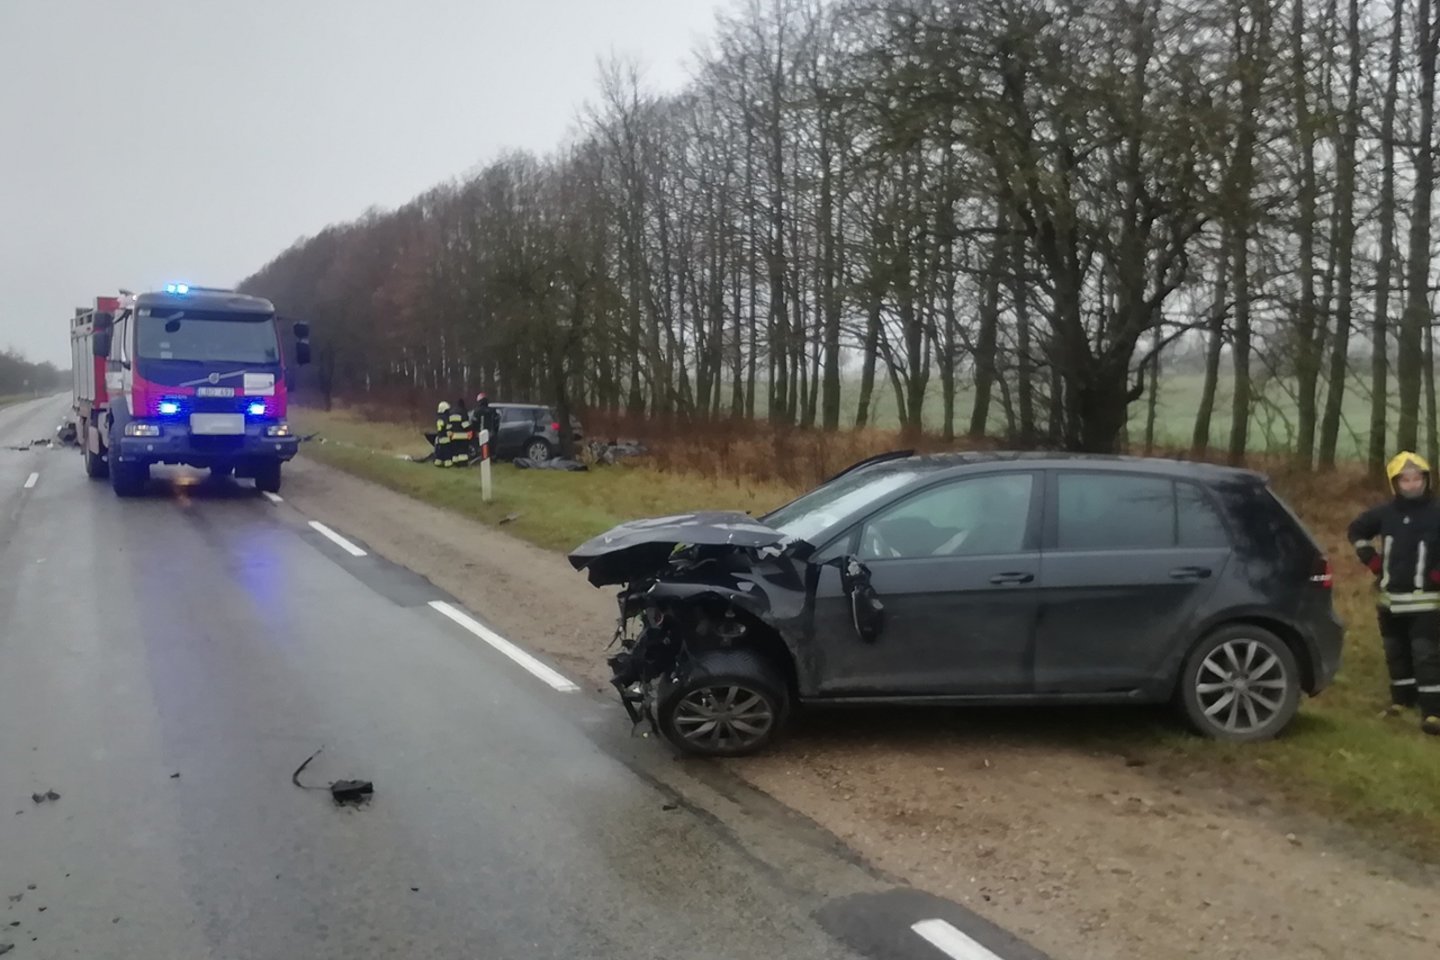  Girtas vairuotojas per baisią kaktomušą sužalojimų išvengė.<br> Šiaulių policijos nuotr.